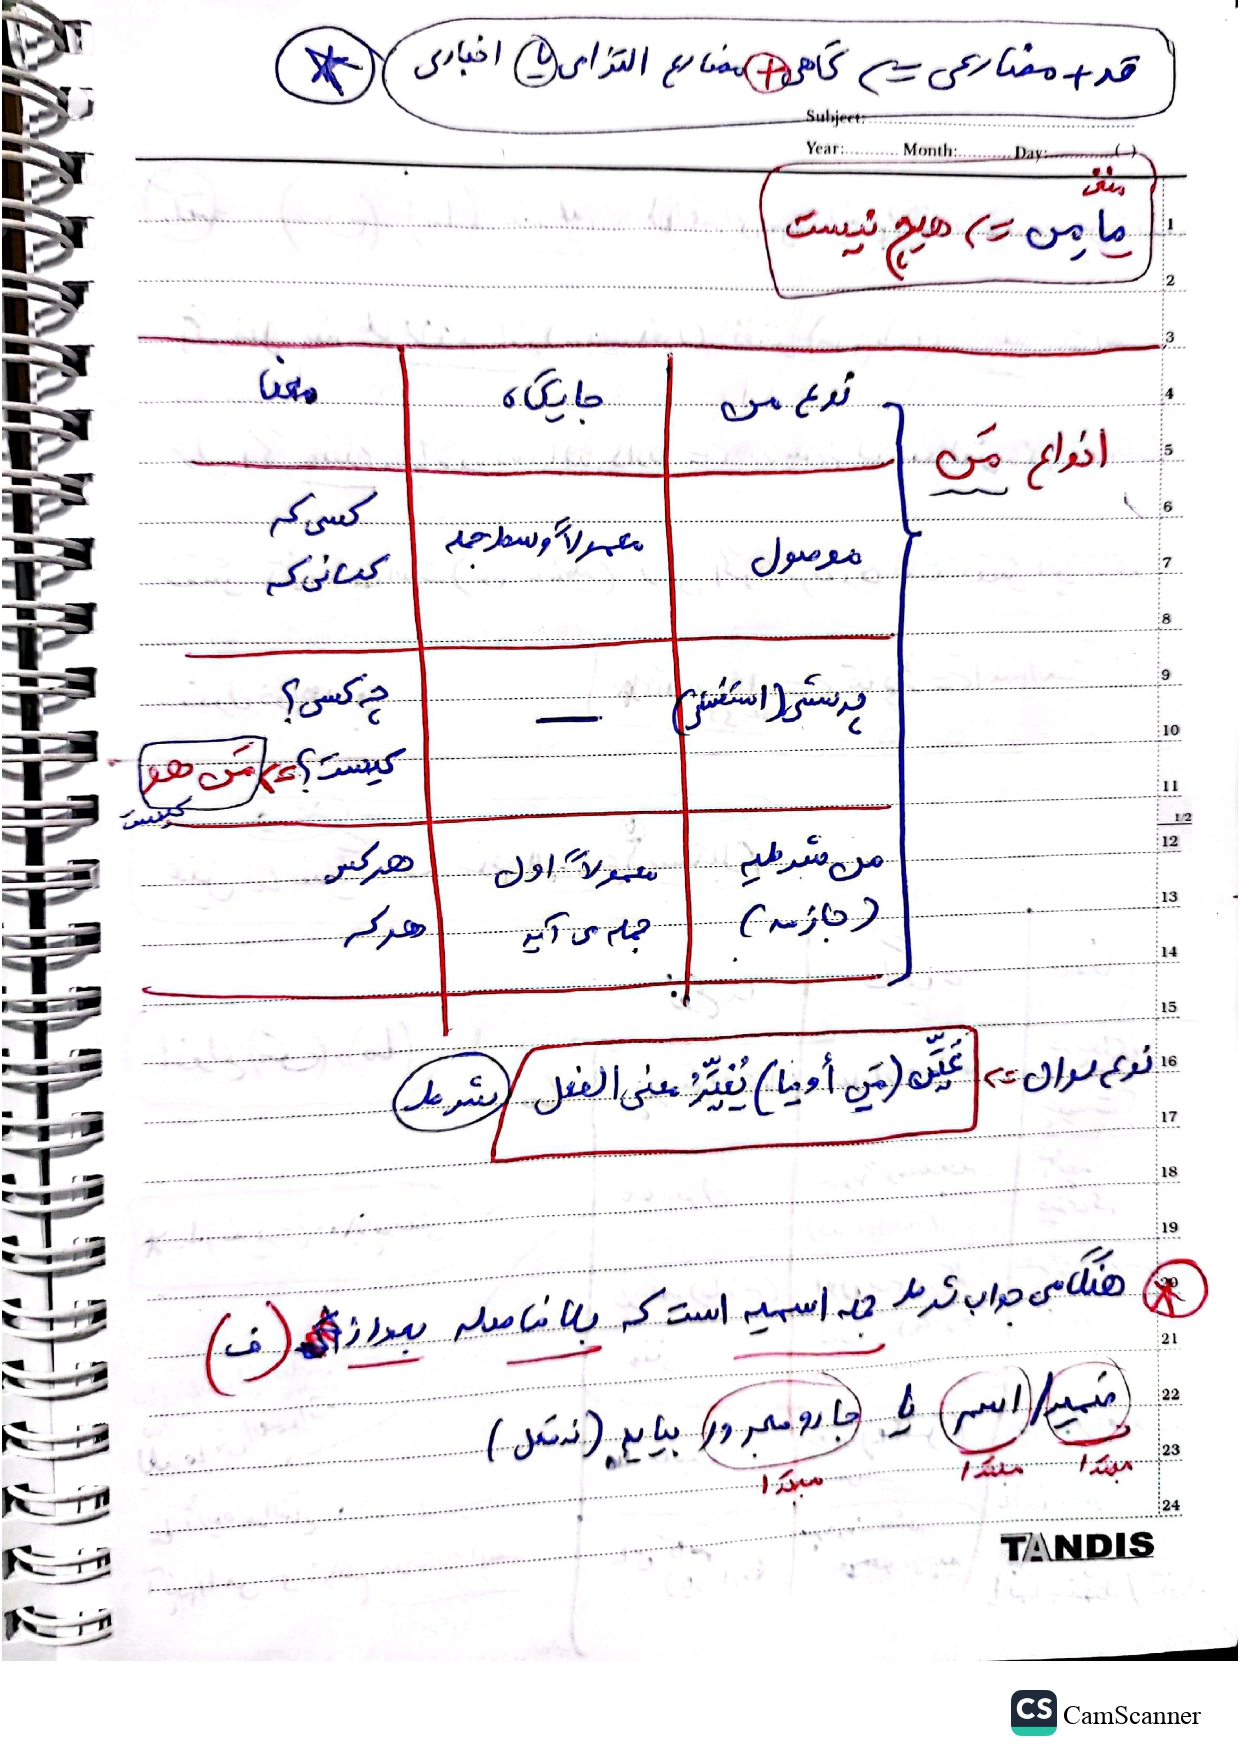 جزوه عربی یازدهم - درس ۳ اسلوب شرط 1